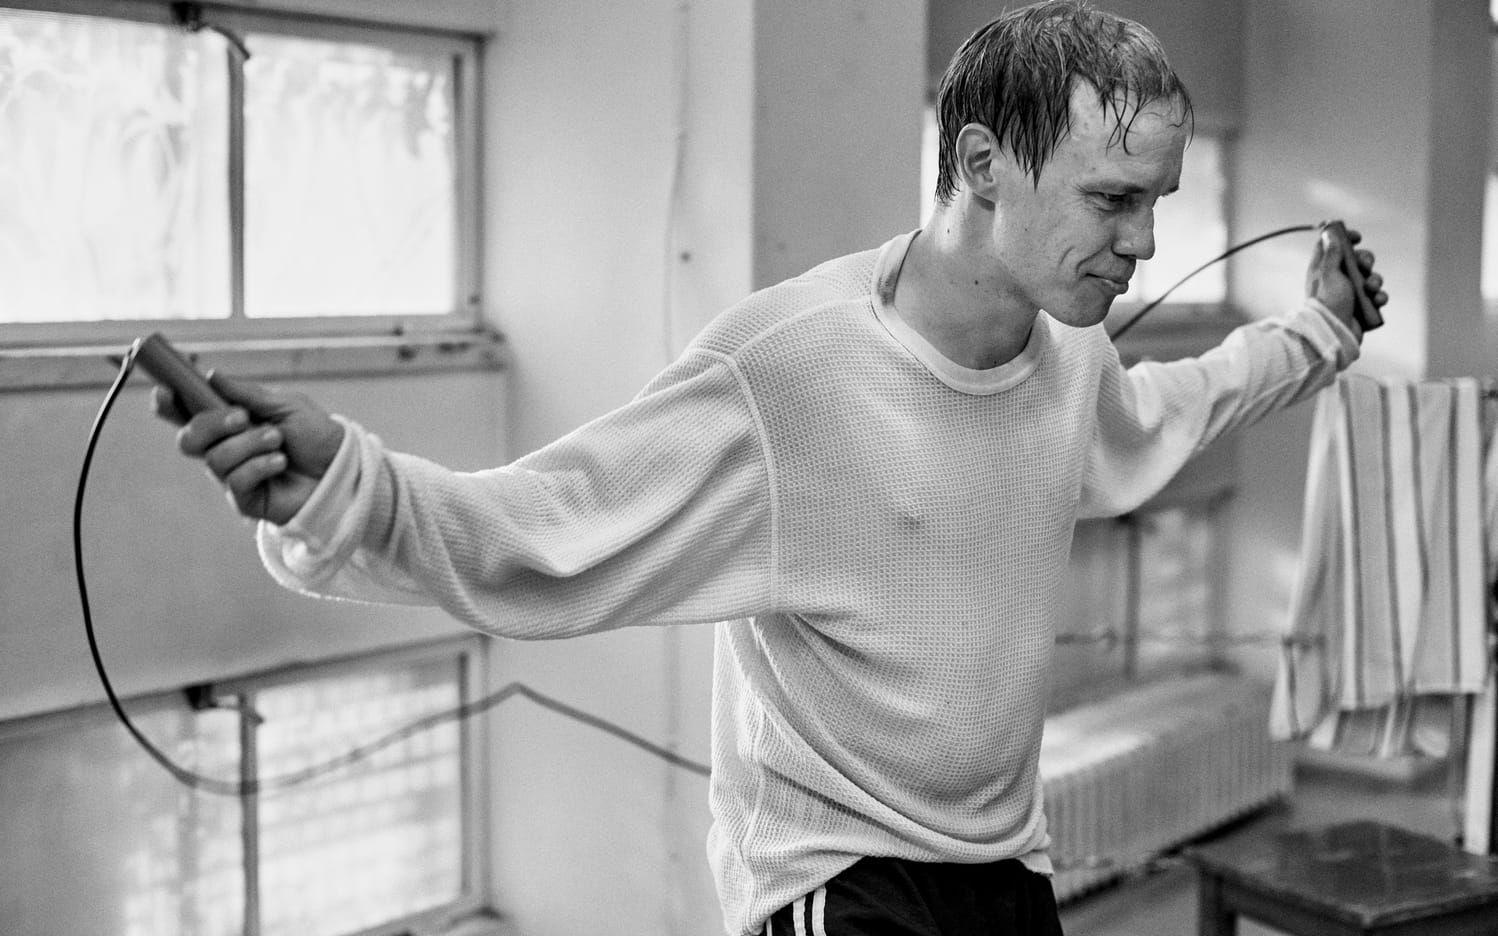 Träning. Jarkko Lahti i rollen som Olli Mäki i Juho Kuosmanens långfilmsdebut, som hyllades redan i Cannes förra året. Bild: Folkets bio